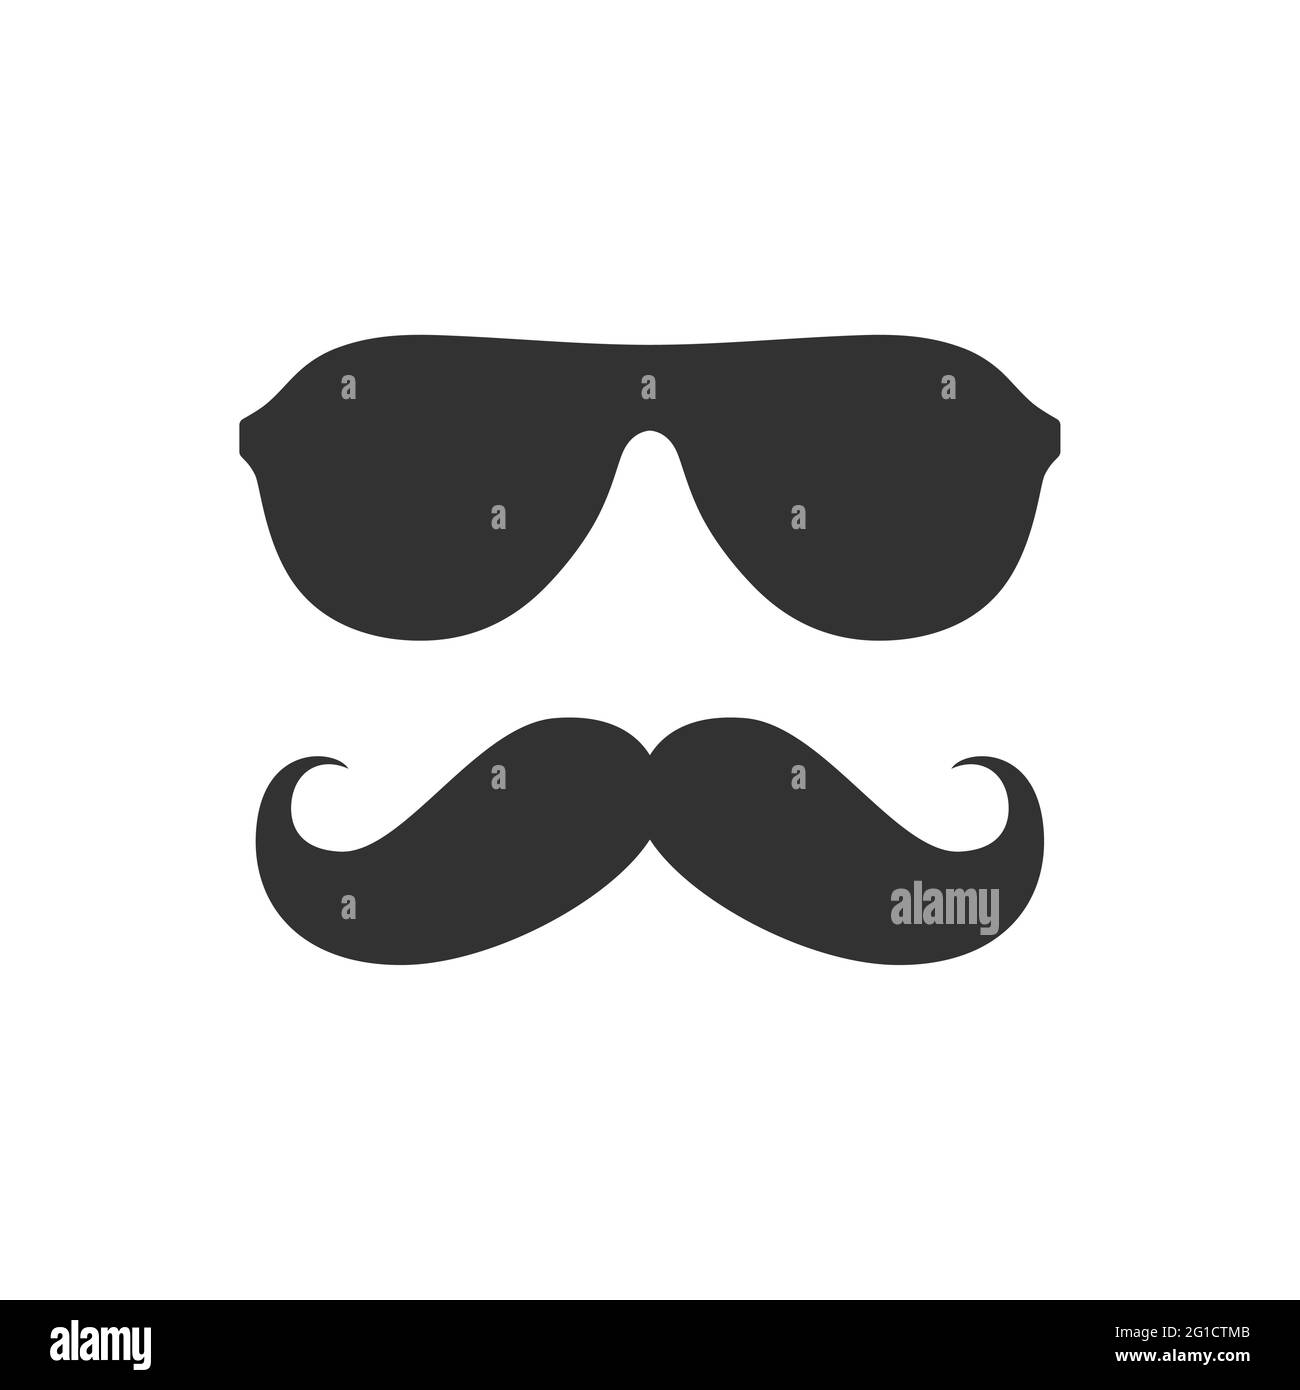 Symbol für den Mann mit Schnurrbart und Sonnenbrille. Schnurrbart und Brille, Geek- oder Hipster-Style. Stock Vektor